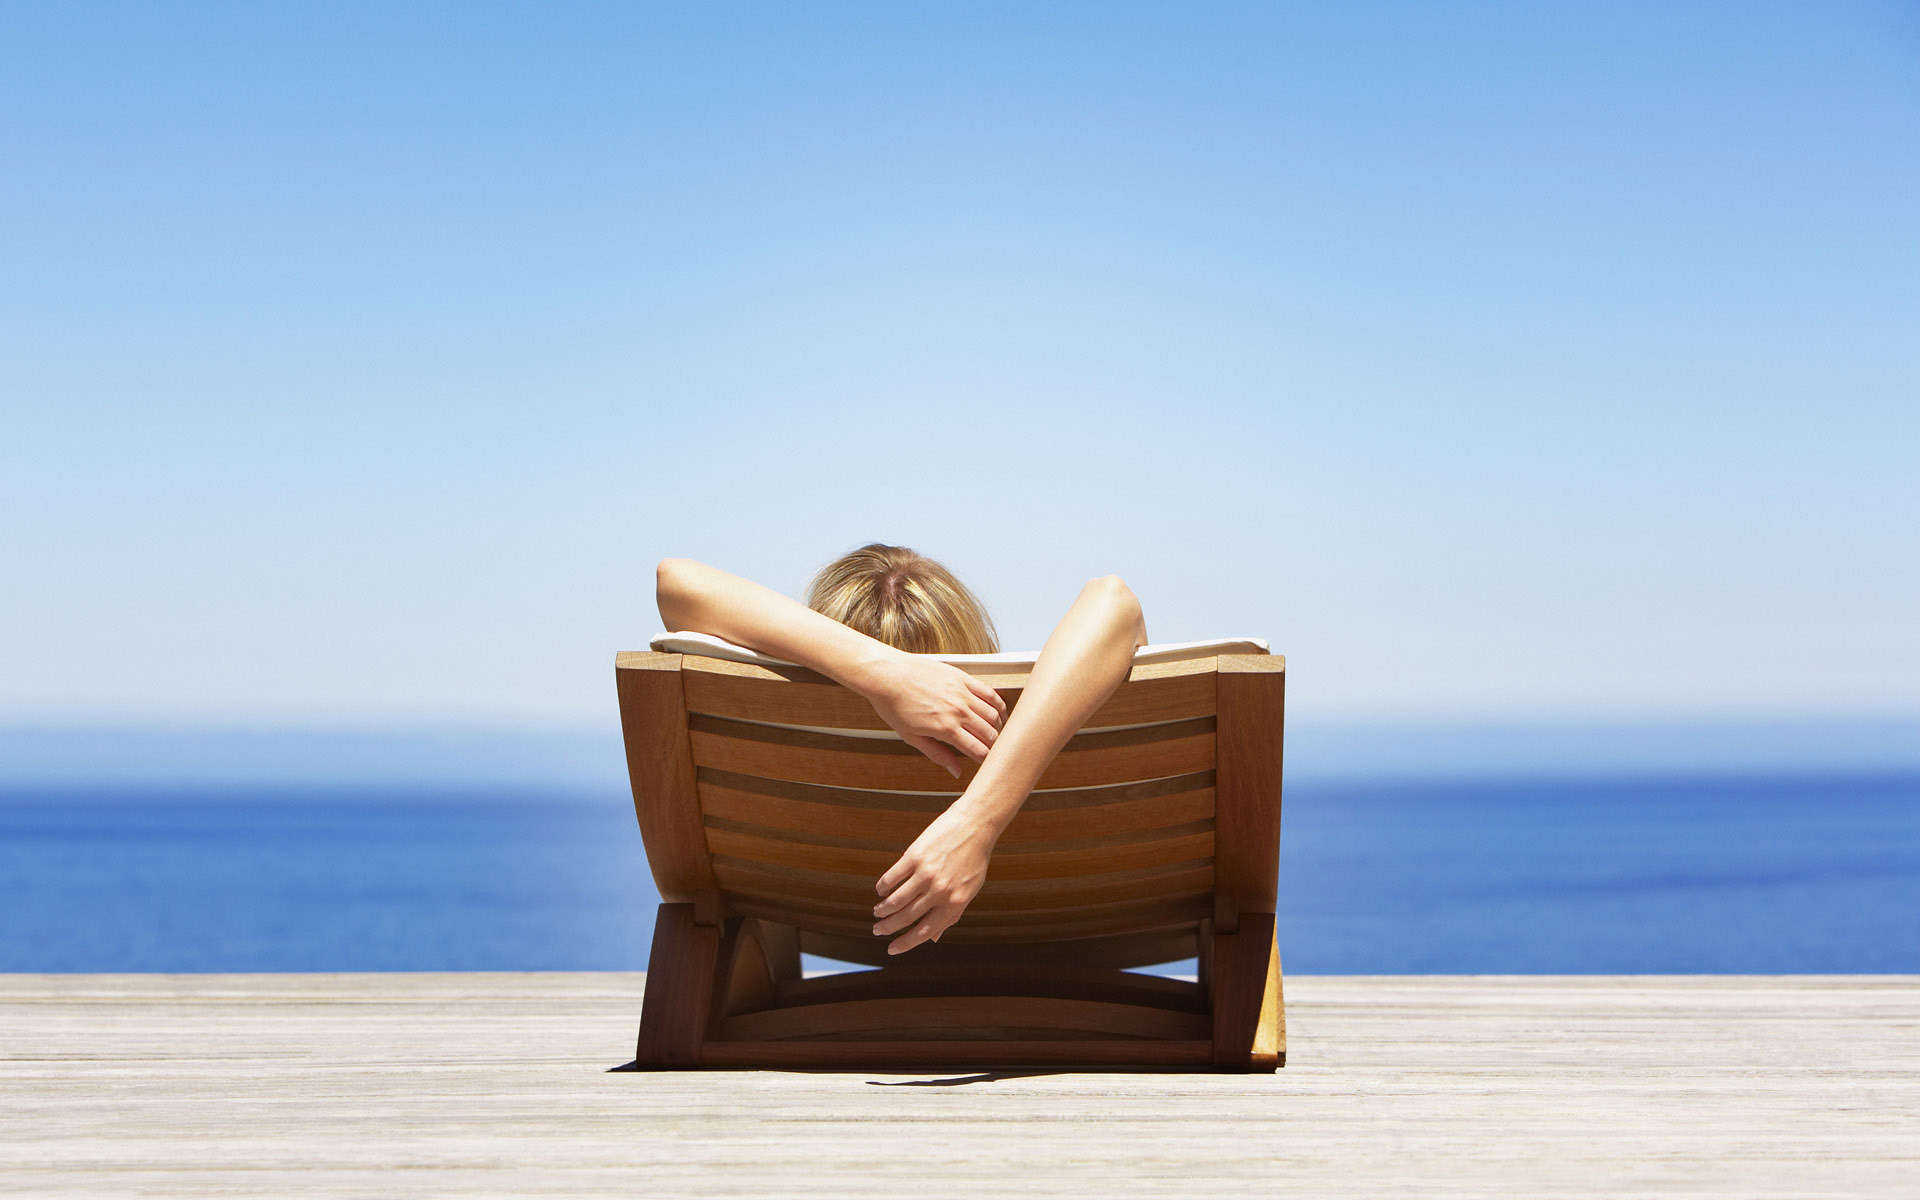 تصویر پس زمینه فوق العاده قشنگ از صندلی زیبا در ساحل برای ویندوز